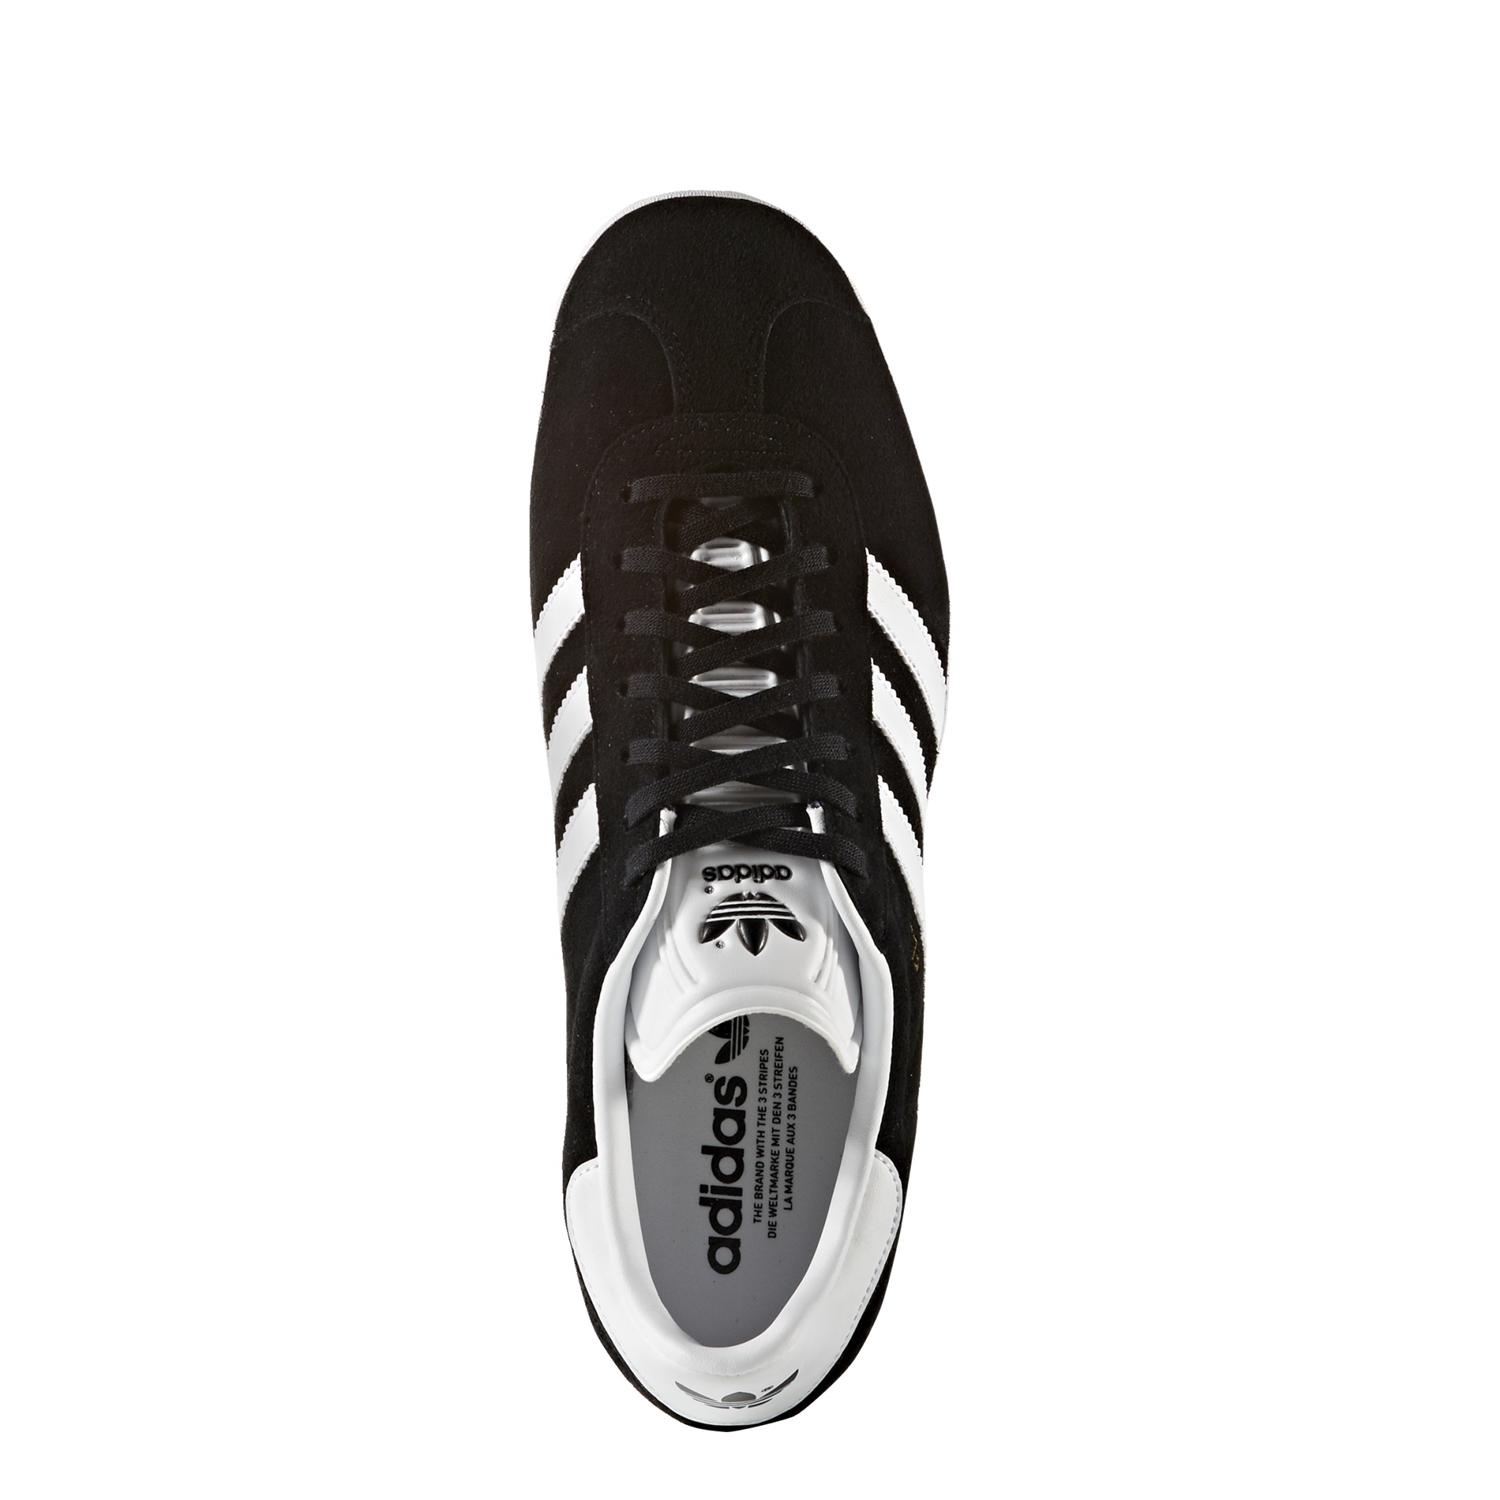 Gracias flaco Posicionamiento en buscadores Adidas Originals Gazelle (negro/blanco) - manelsanchez.com